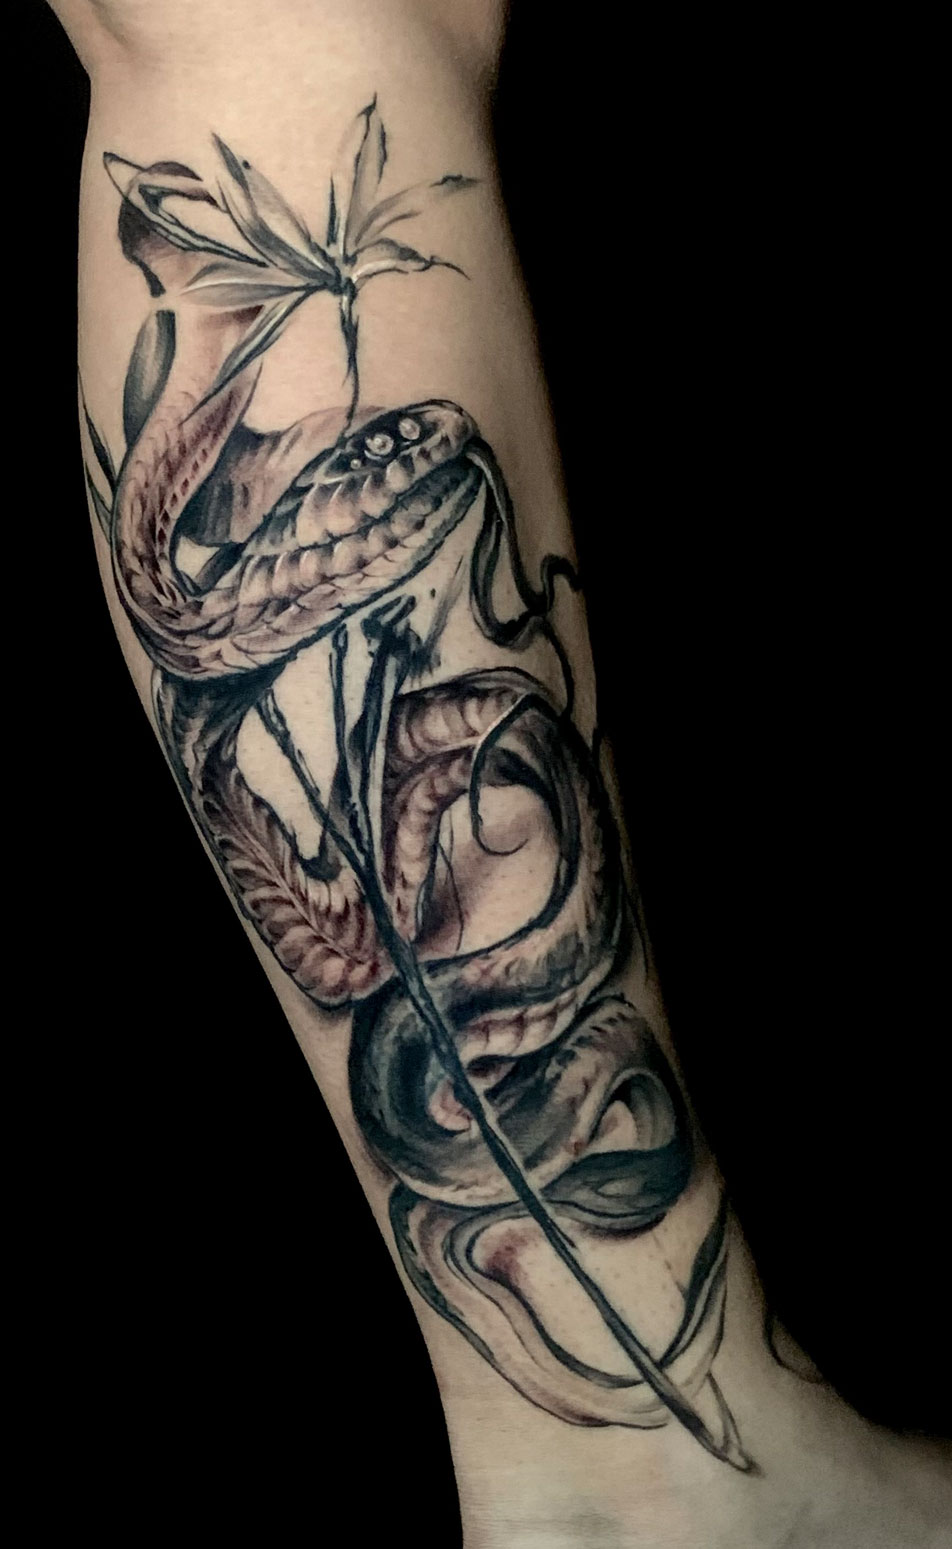 Tattoo Anansi Studio München Munich Haidhausen Tim sketchy blackwork snake flower best abstract sketchy darkwork